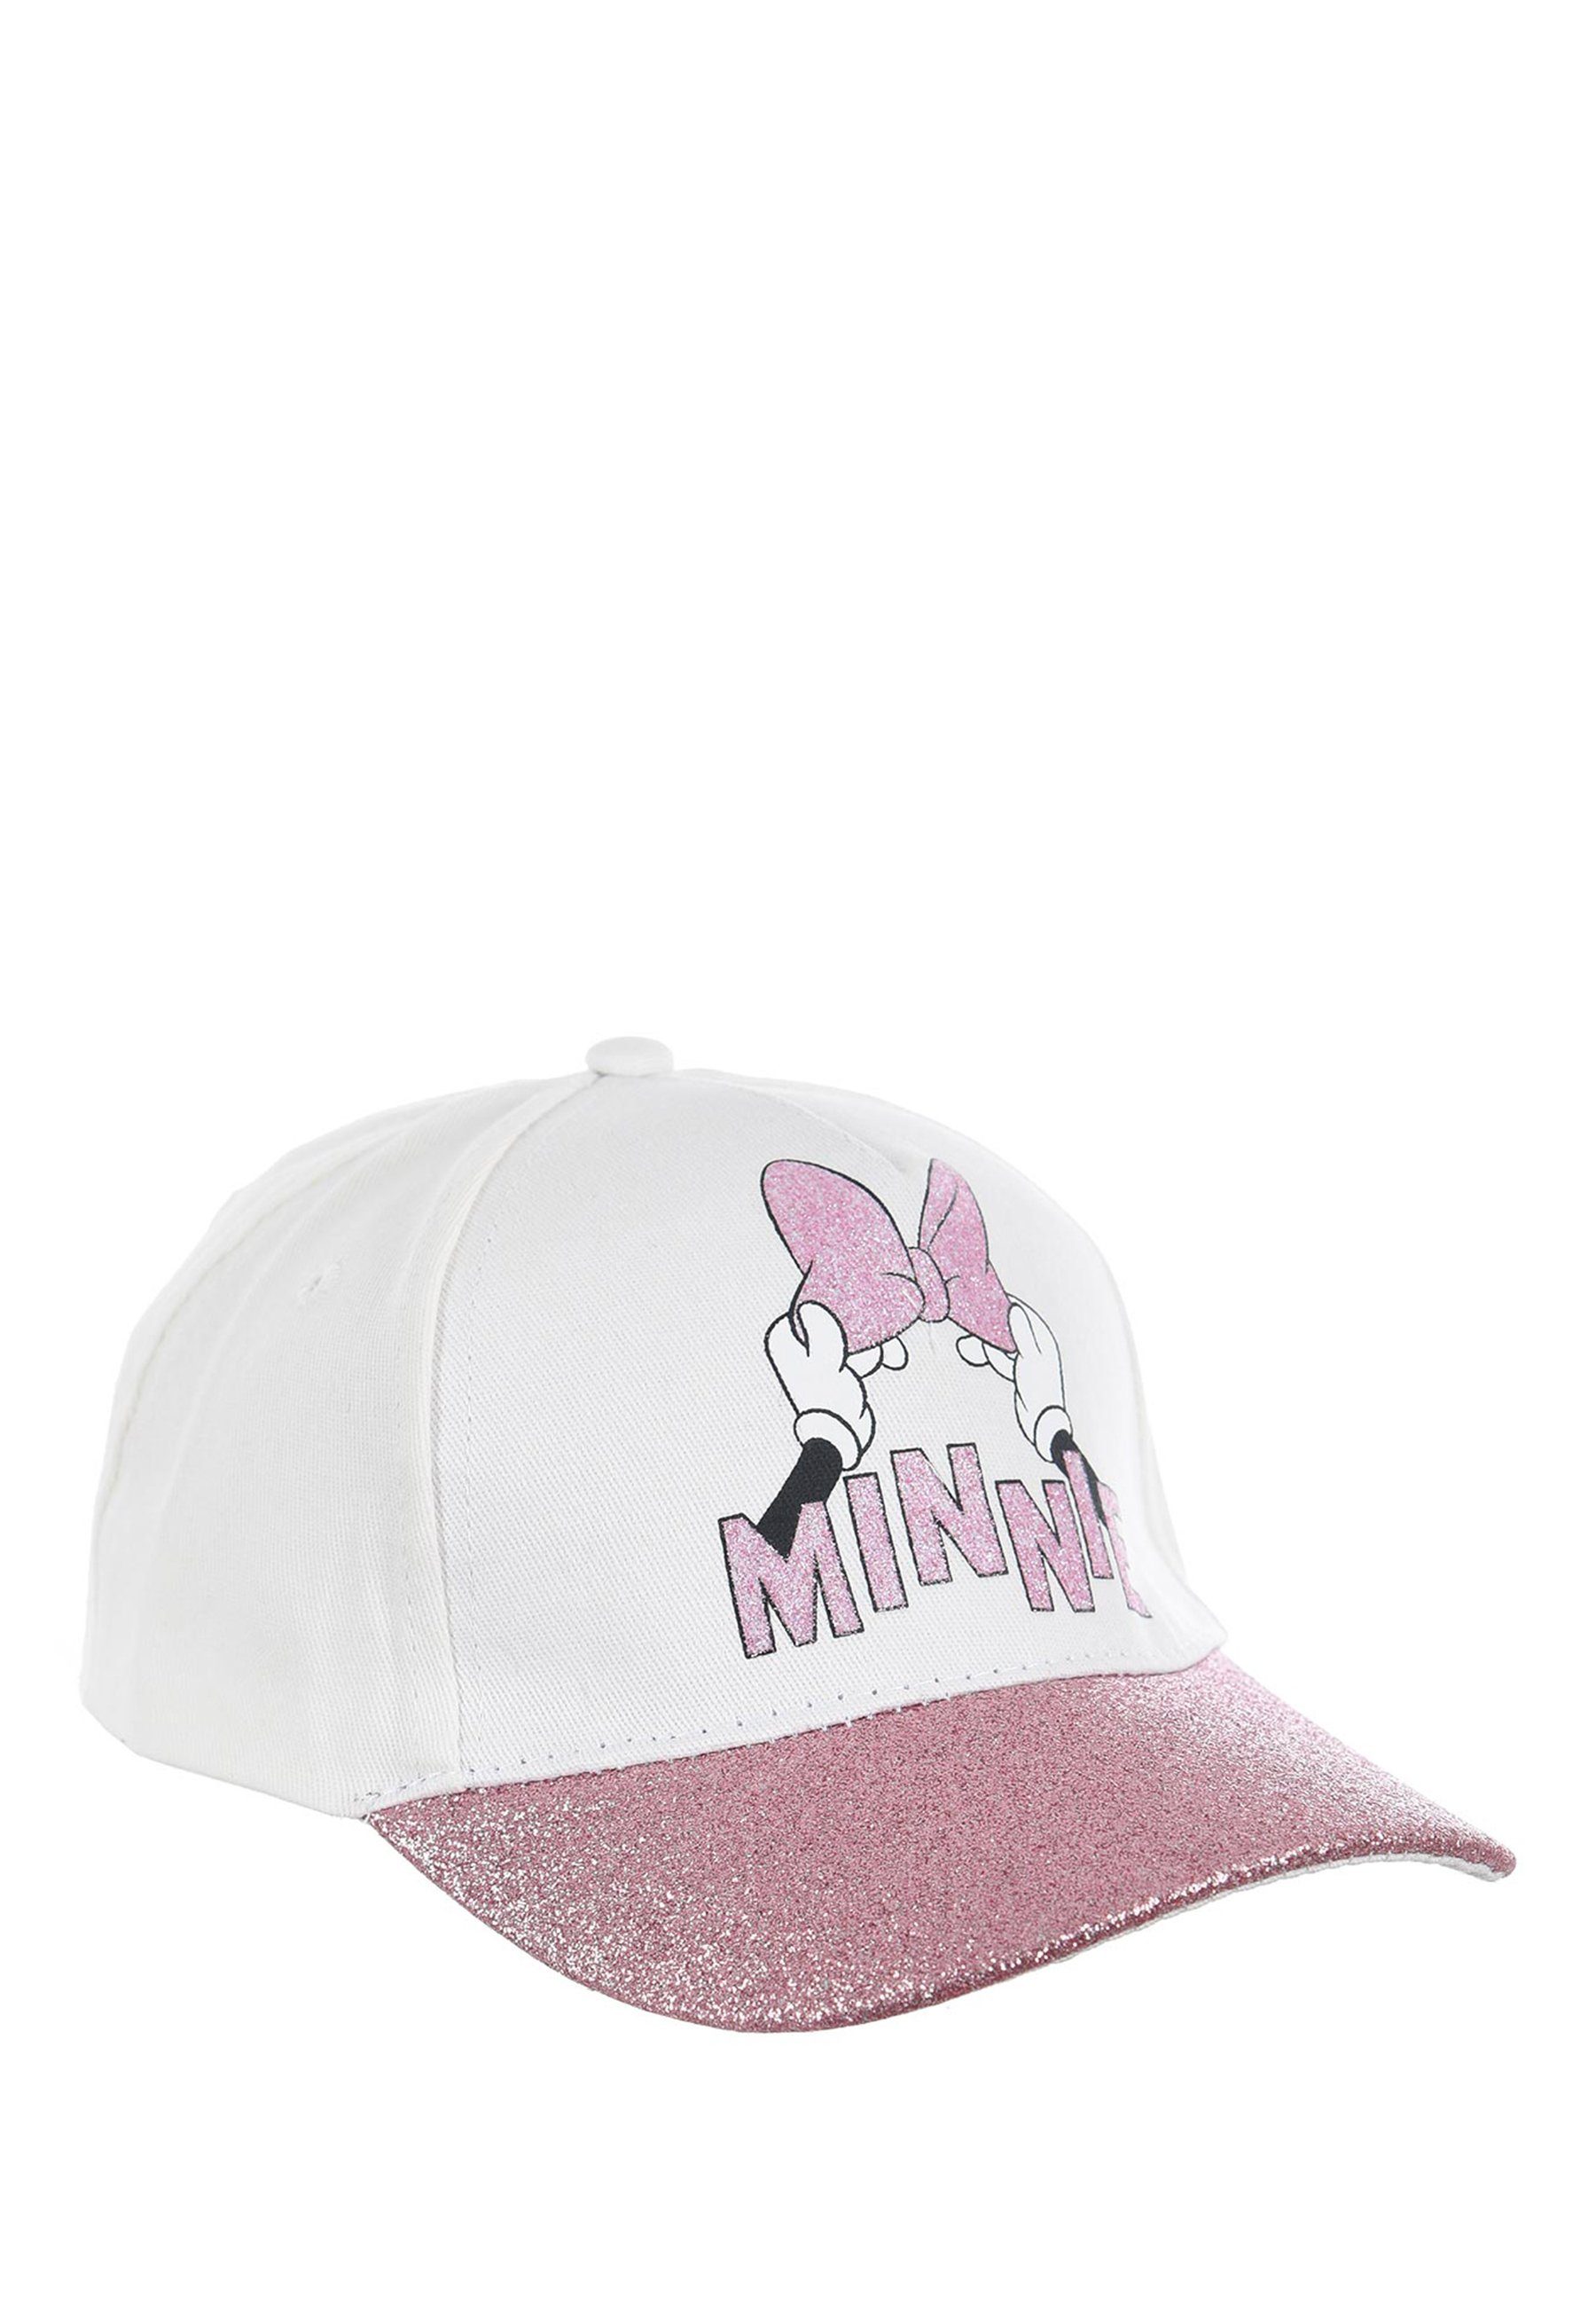 Disney Minnie Mouse Baseball Cap Kappe Mütze Weiß